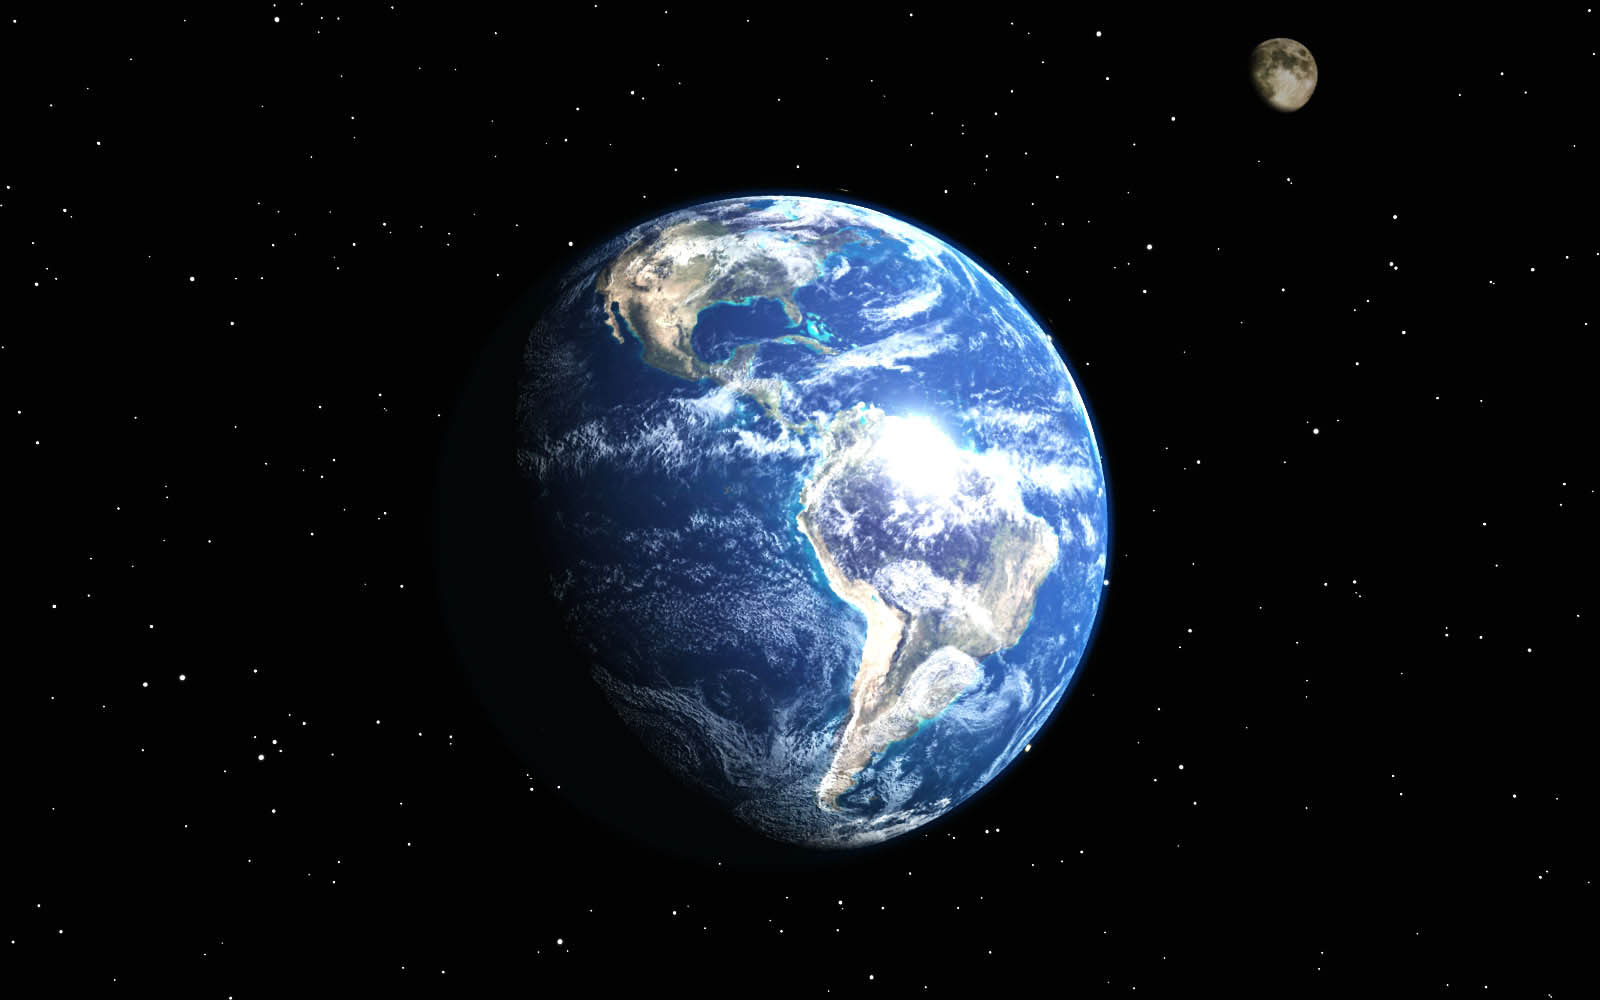 And Moon Wallpaper Earthand Desktop Earth